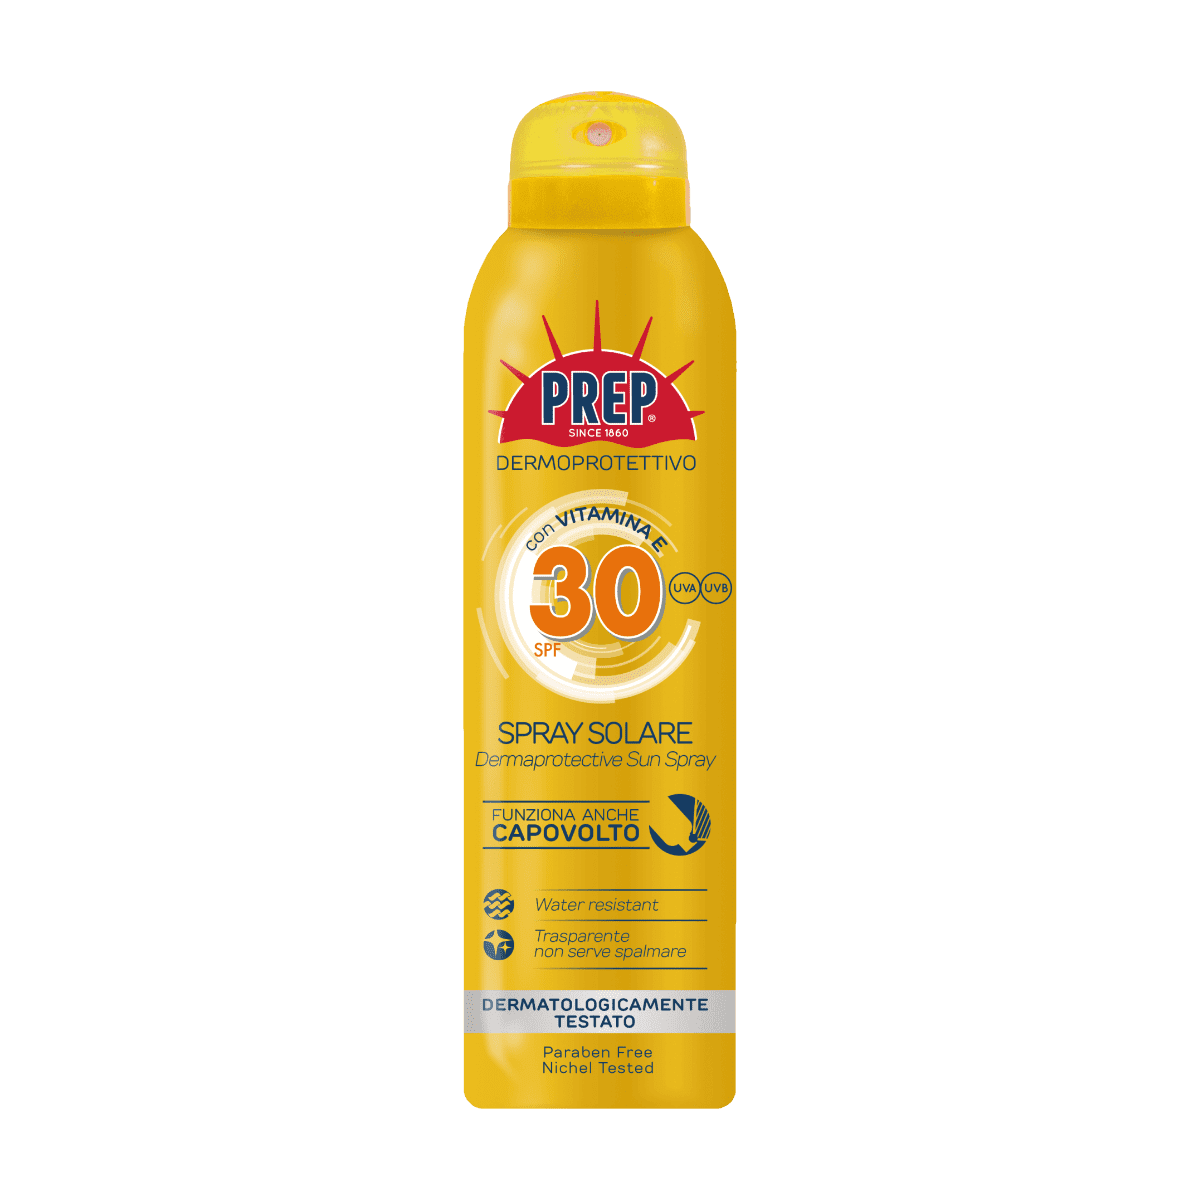 PREP Derma Protective Sun Spray SPF 30 - ochranný sprej na opaľovanie, 150 ml